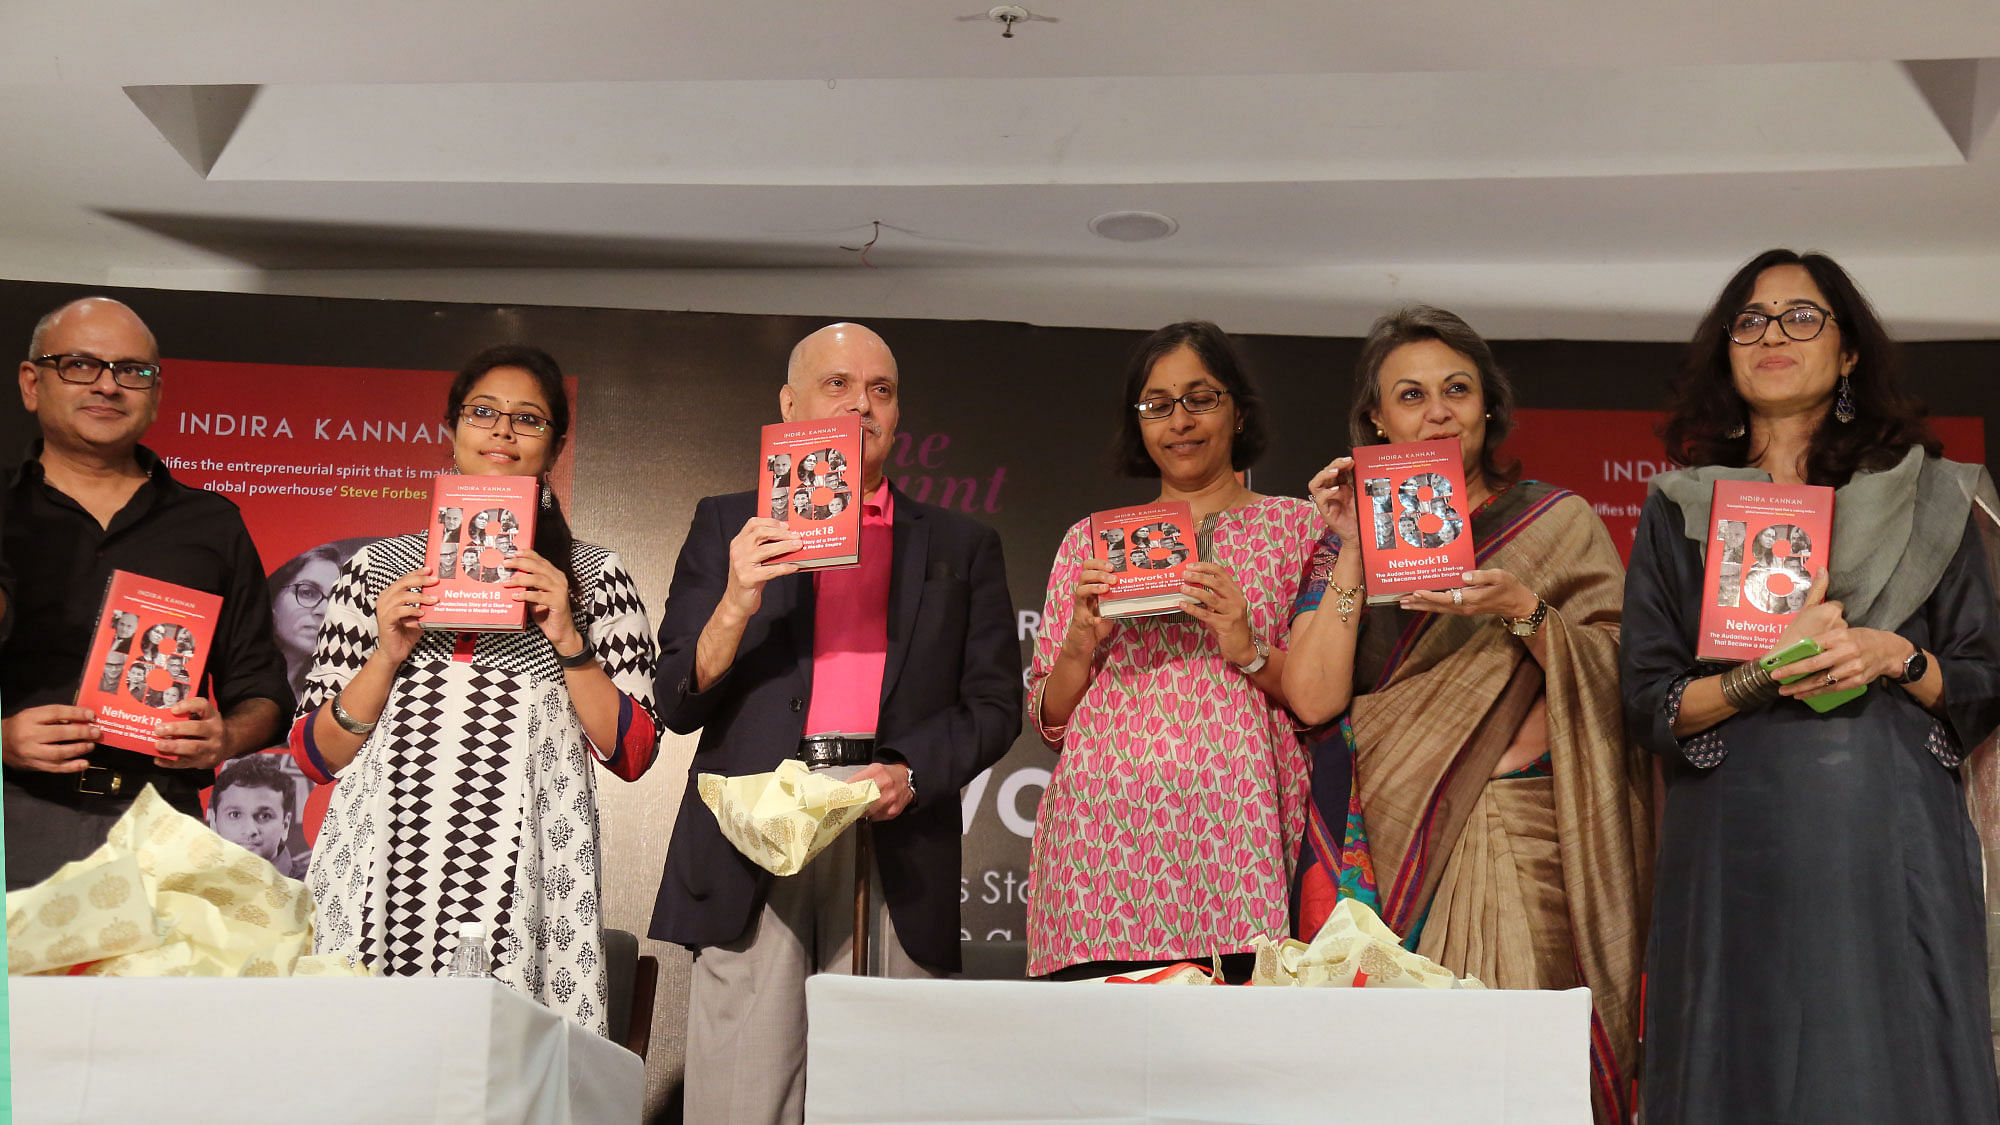 Raghav Bahl, Sanjay Ray Chaudhuri, Indira Kannan, Vandana Malik and Ritu Kapur at the launch of Network18 book. (Photo: <b>The Quint</b>)